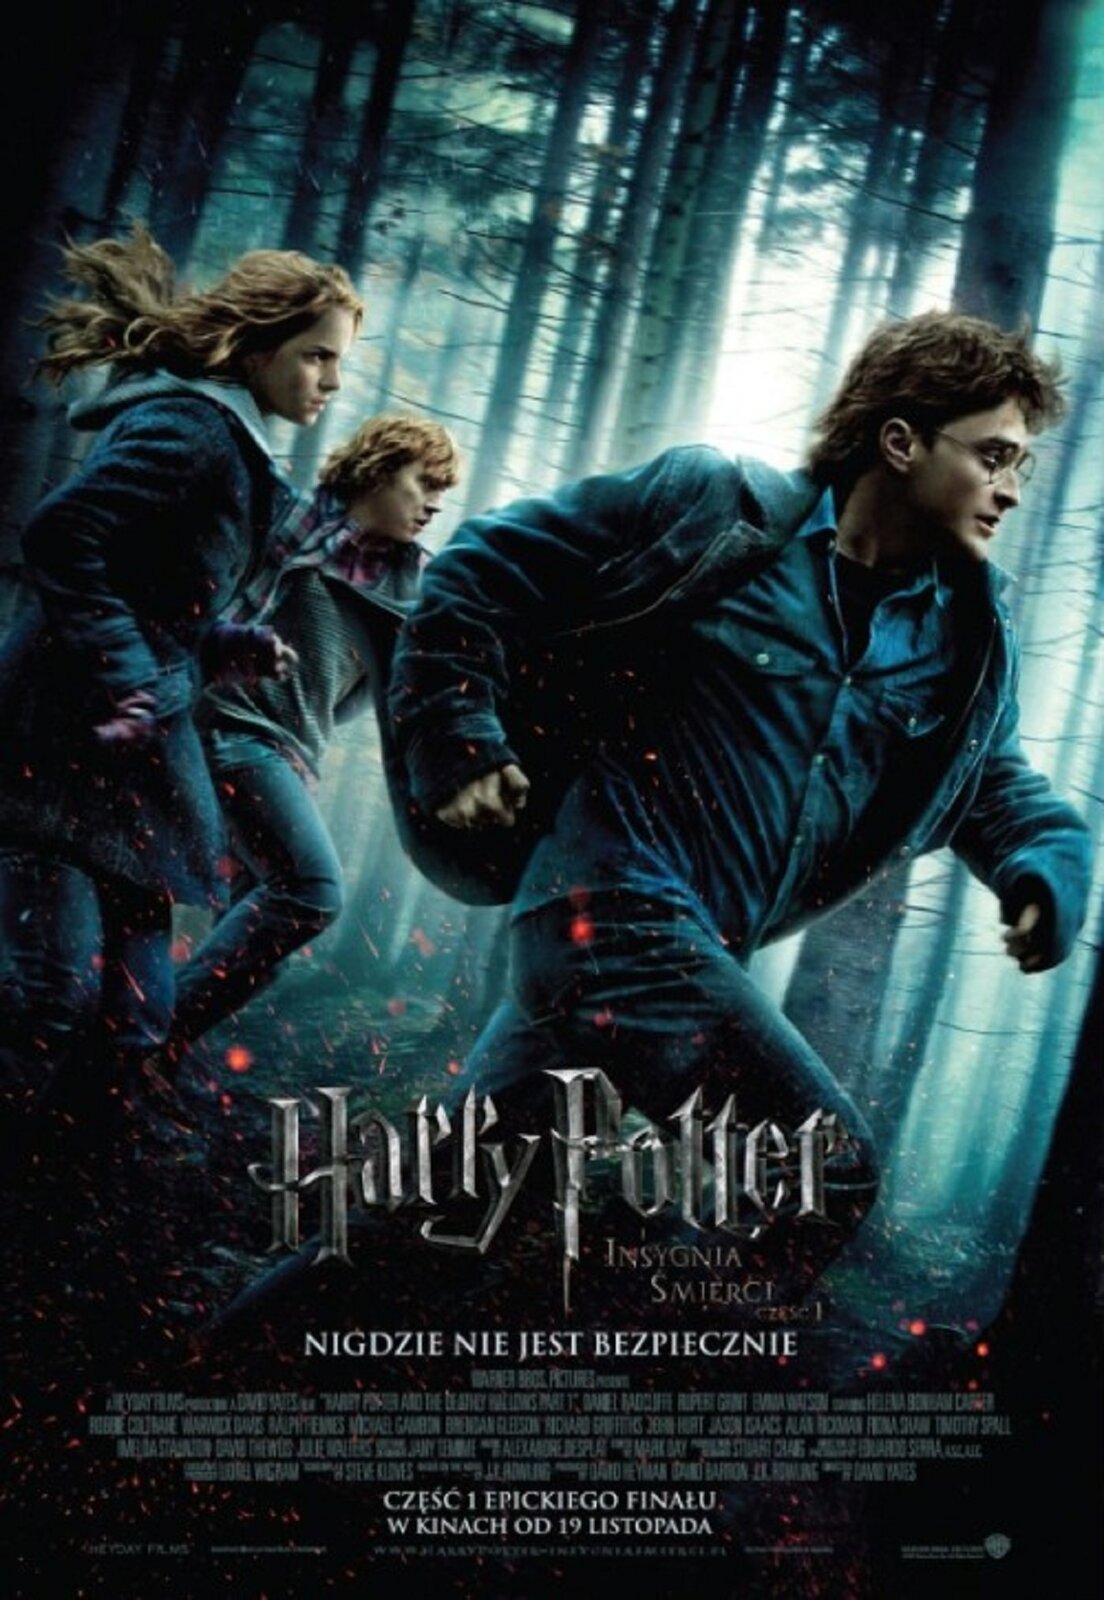 Ilustracja przedstawia plakat do filmu „Harry Potter – INSYGNIA ŚMIERCI”. W centrum zdjęcia, na tle mrocznego lasu ukazane zostały biegnące postacie dwóch chłopców i dziewczyny ubranych w kurtki i jeansy. Całość kompozycji utrzymana jest w chłodnej, niebiesko-czarnej tonacji. Na dole znajduje się duży napis „Harry Potter” natomiast pod nim mniejszą czcionką „INSYGNIA ŚMIERCI”. Poniżej umieszczony został blok tekstowy z informacjami na temat filmu.